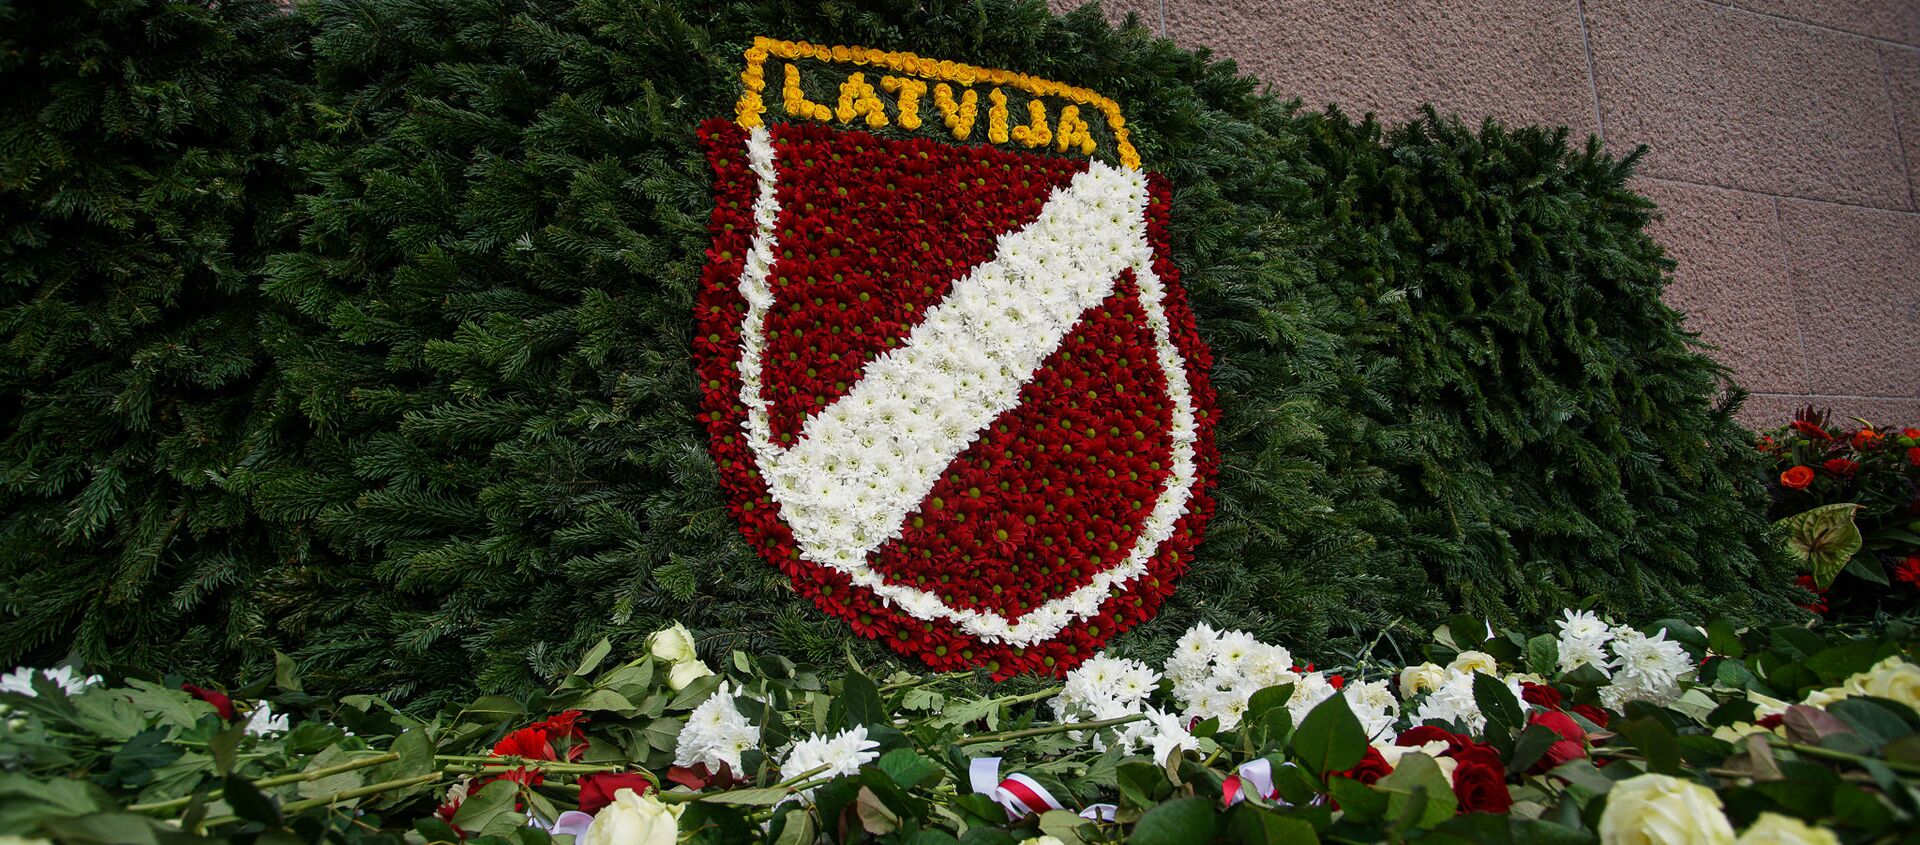 День памяти латышских легионеров Ваффен СС в Риге, 16 марта - Sputnik Латвия, 1920, 18.03.2021